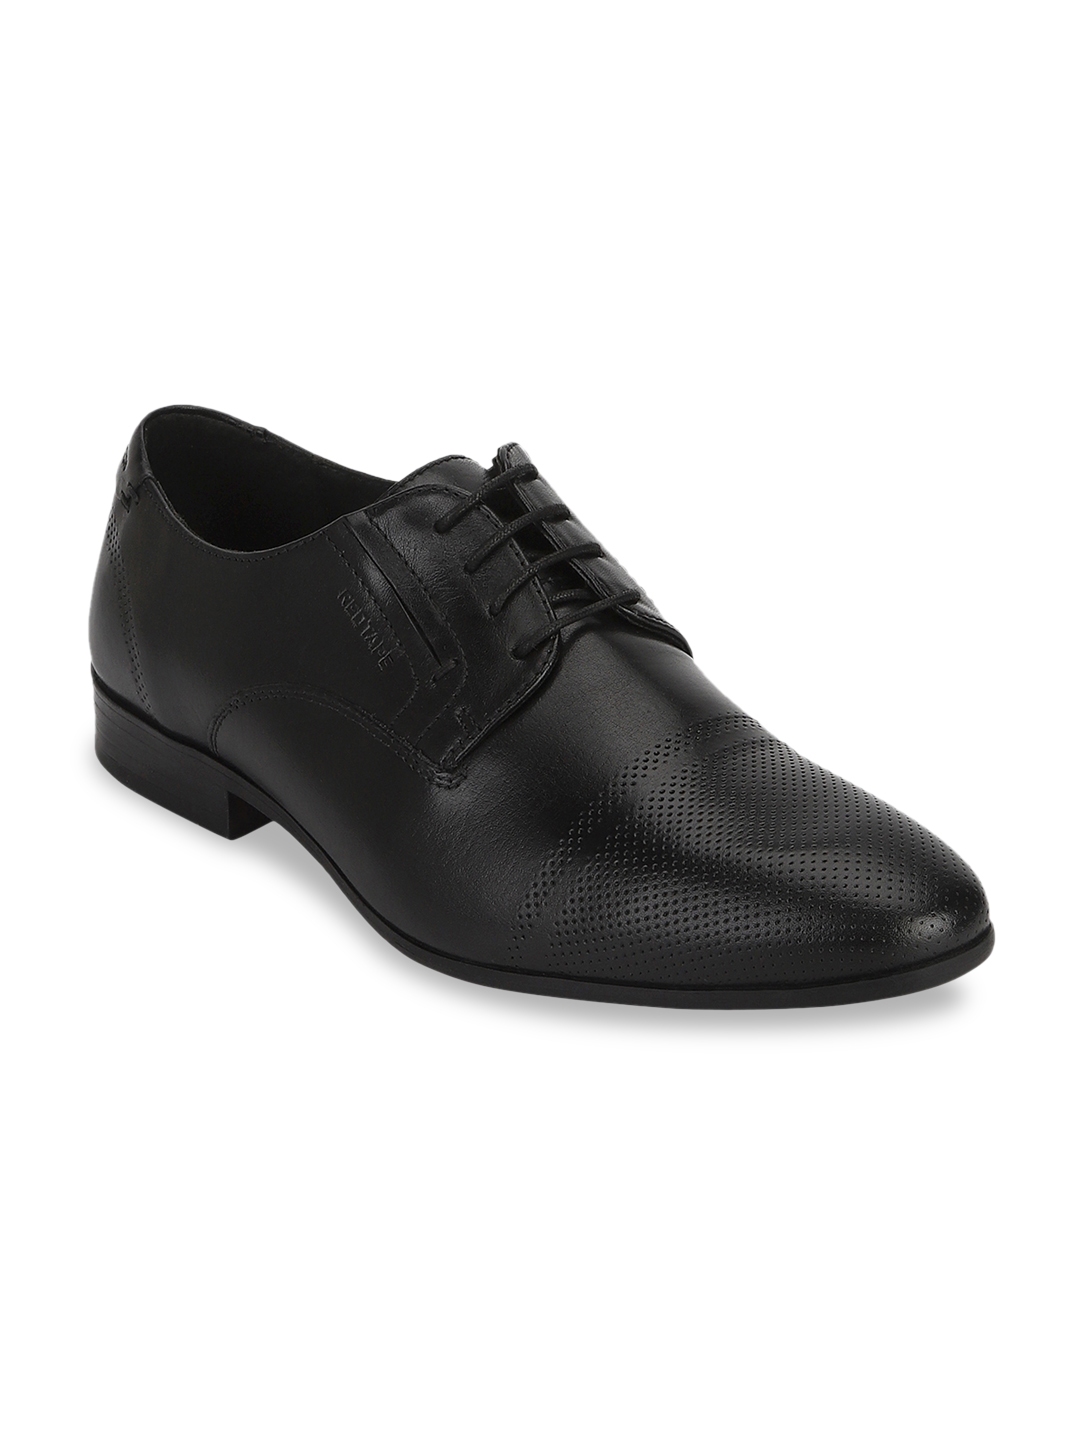 Buy Red Tape Men Black Solid Leather Derbys - Formal Shoes for Men ...